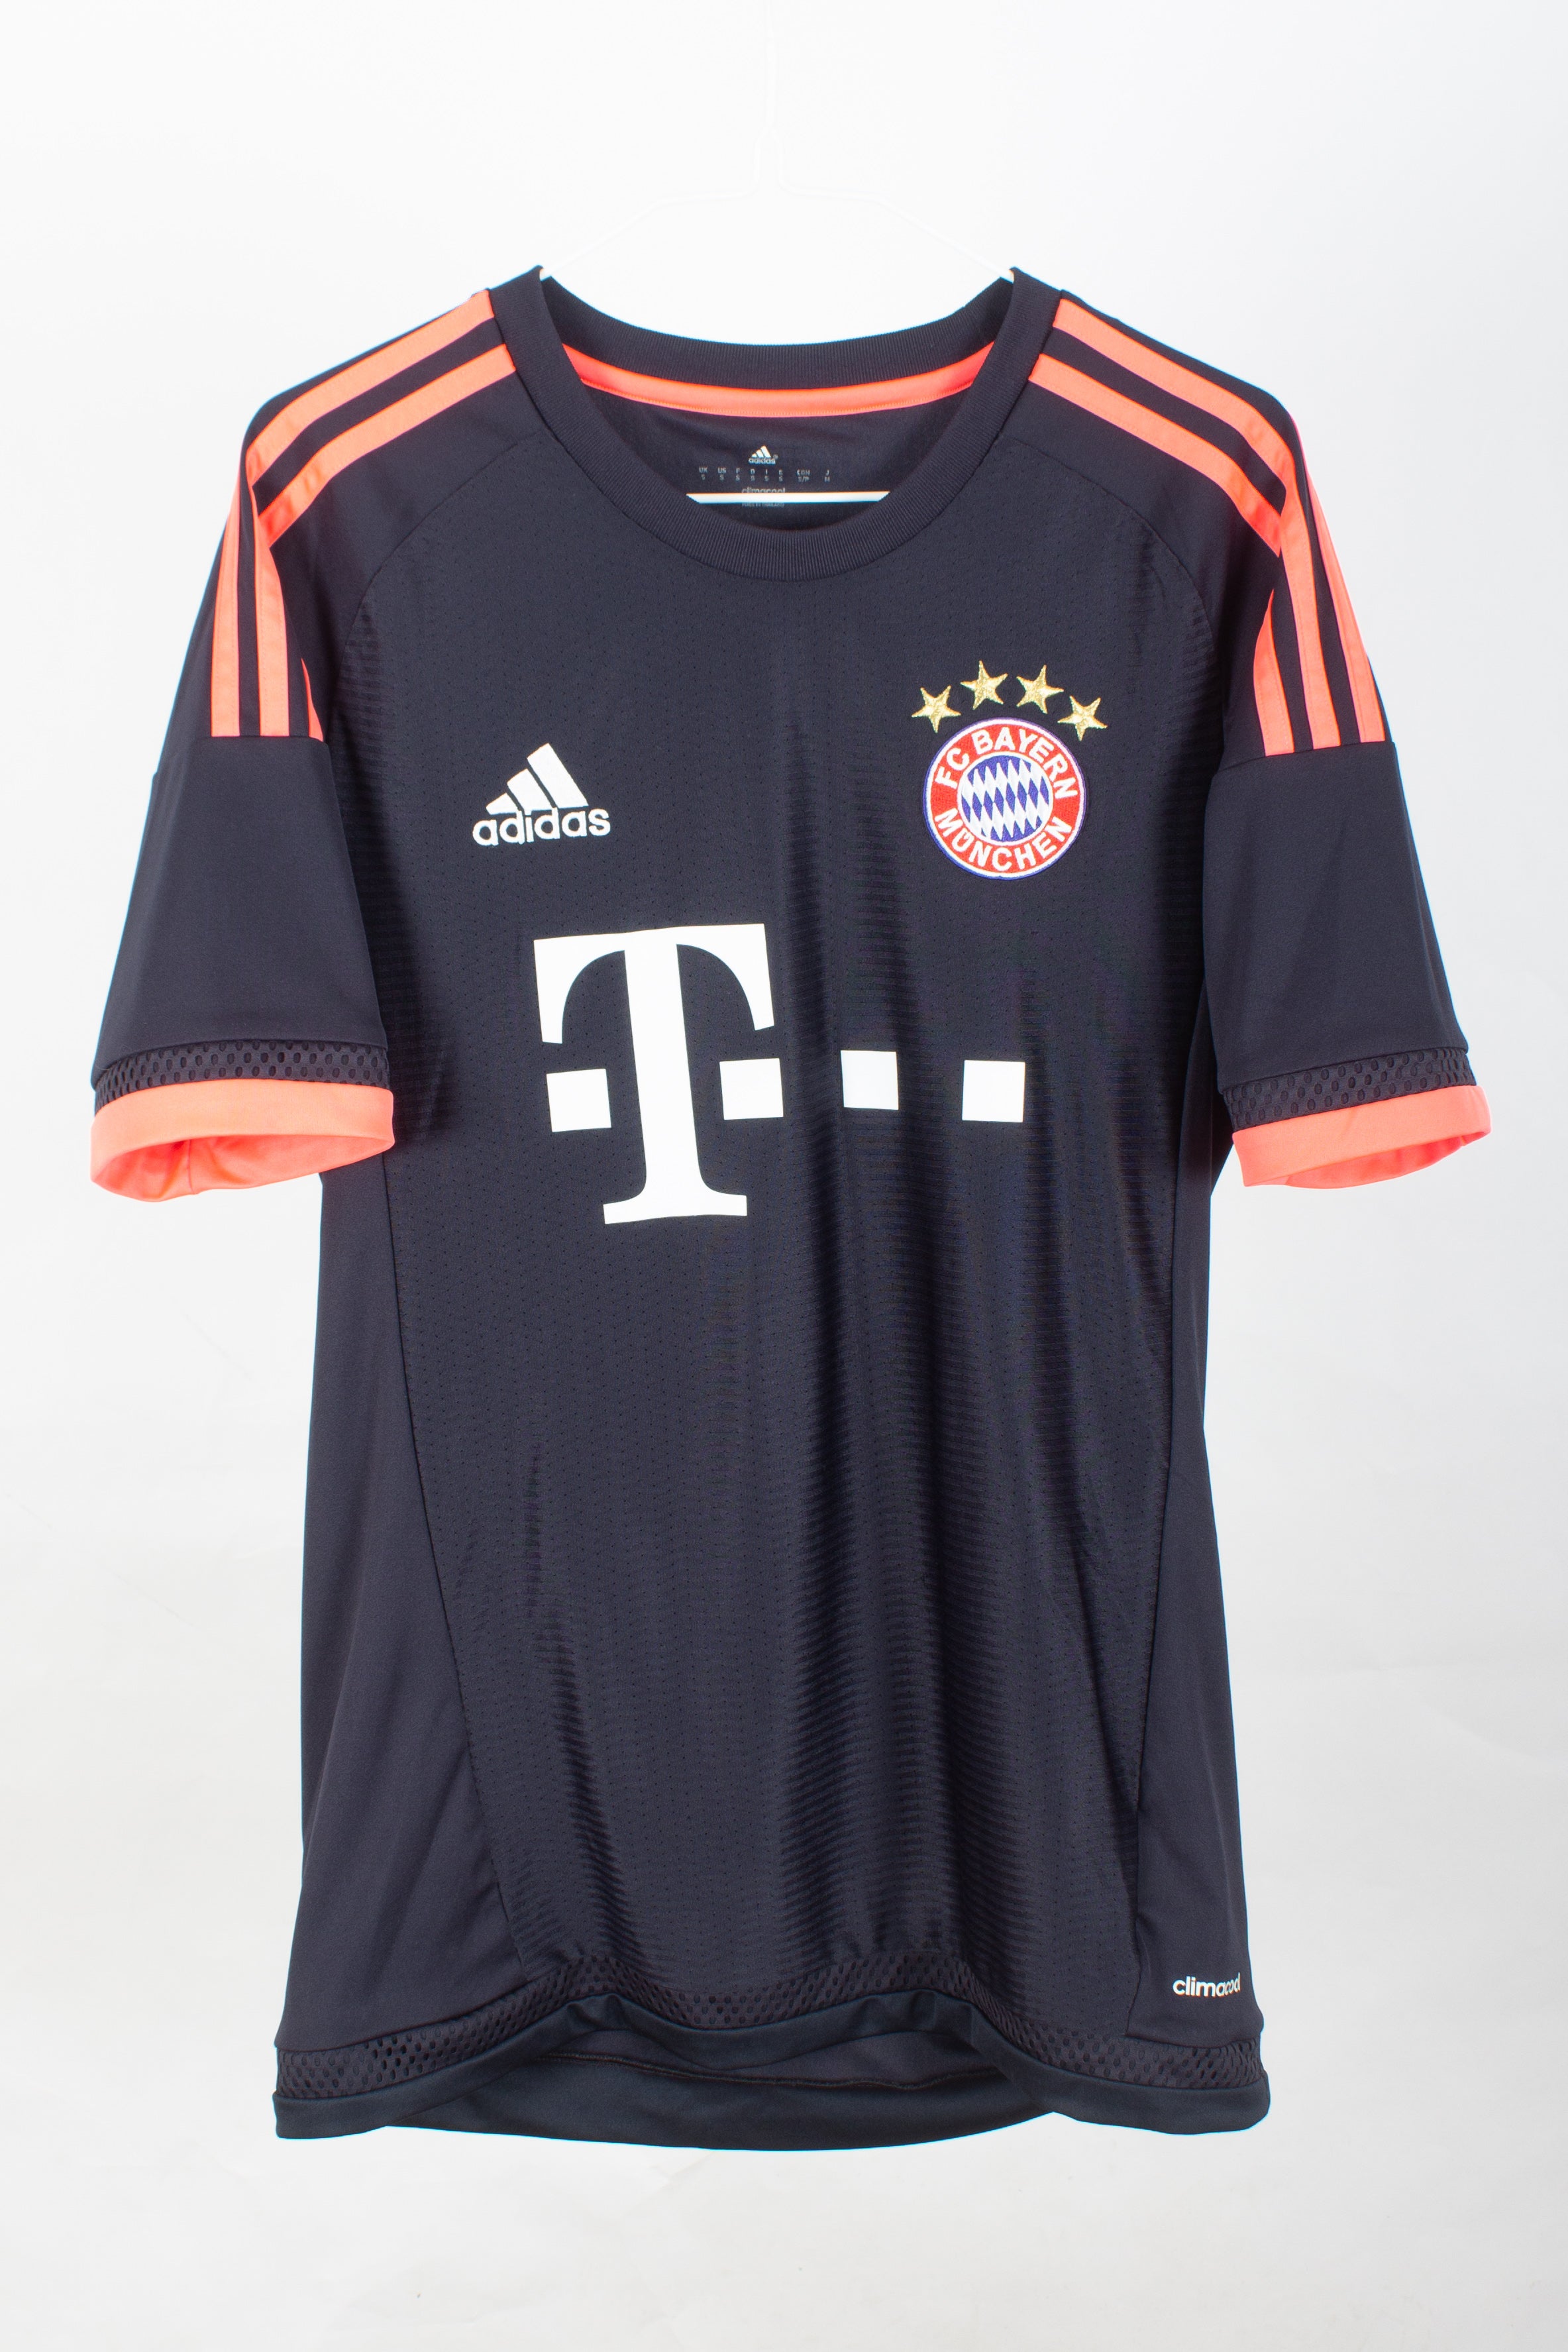 Bayern Munich 2015/16 Third Shirt (Gotze #19) (S)